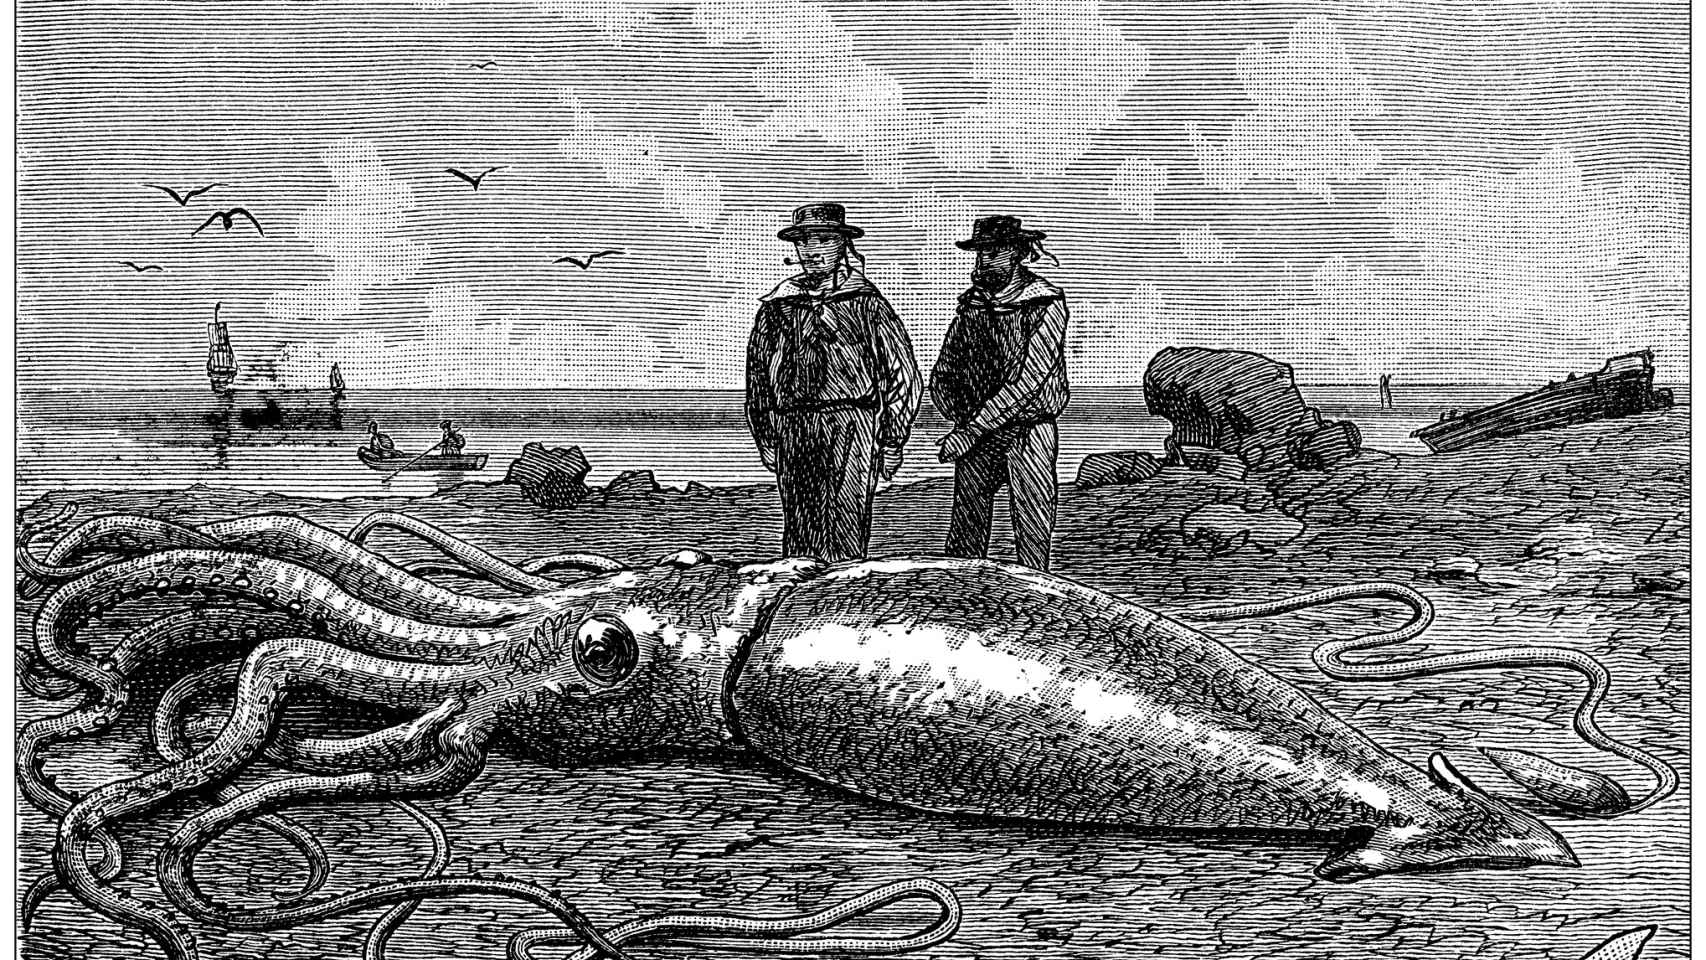 Imagen de archivo que muestra una ilustración antigua de un calamar gigante (Architeuthis dux).